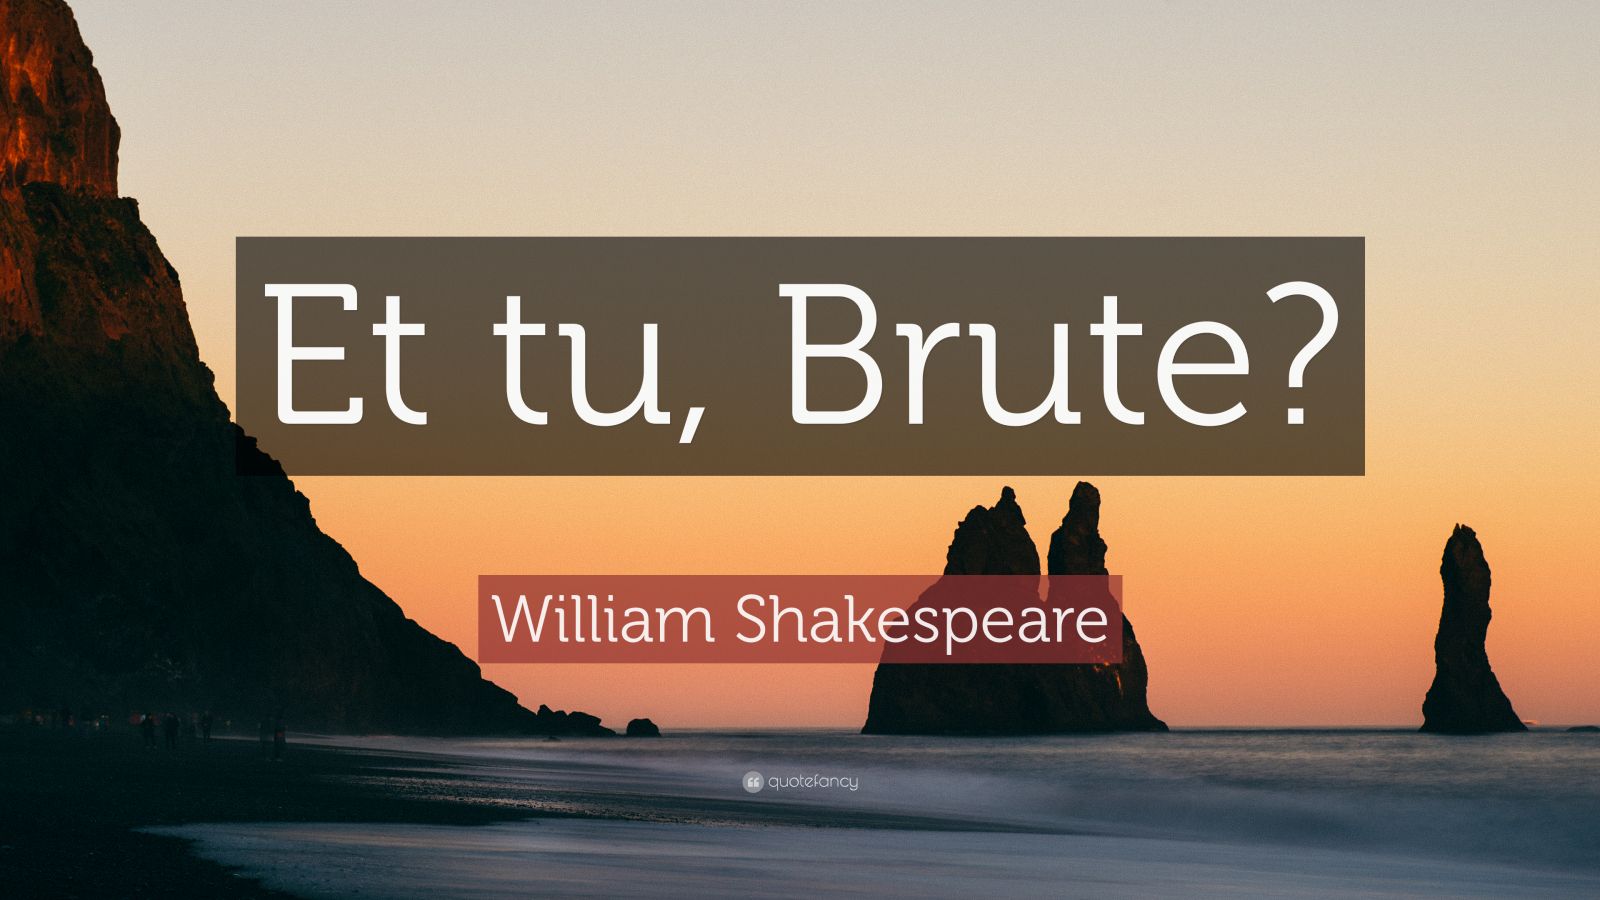 William Shakespeare Quote “Et tu, Brute?” (16 wallpapers) Quotefancy